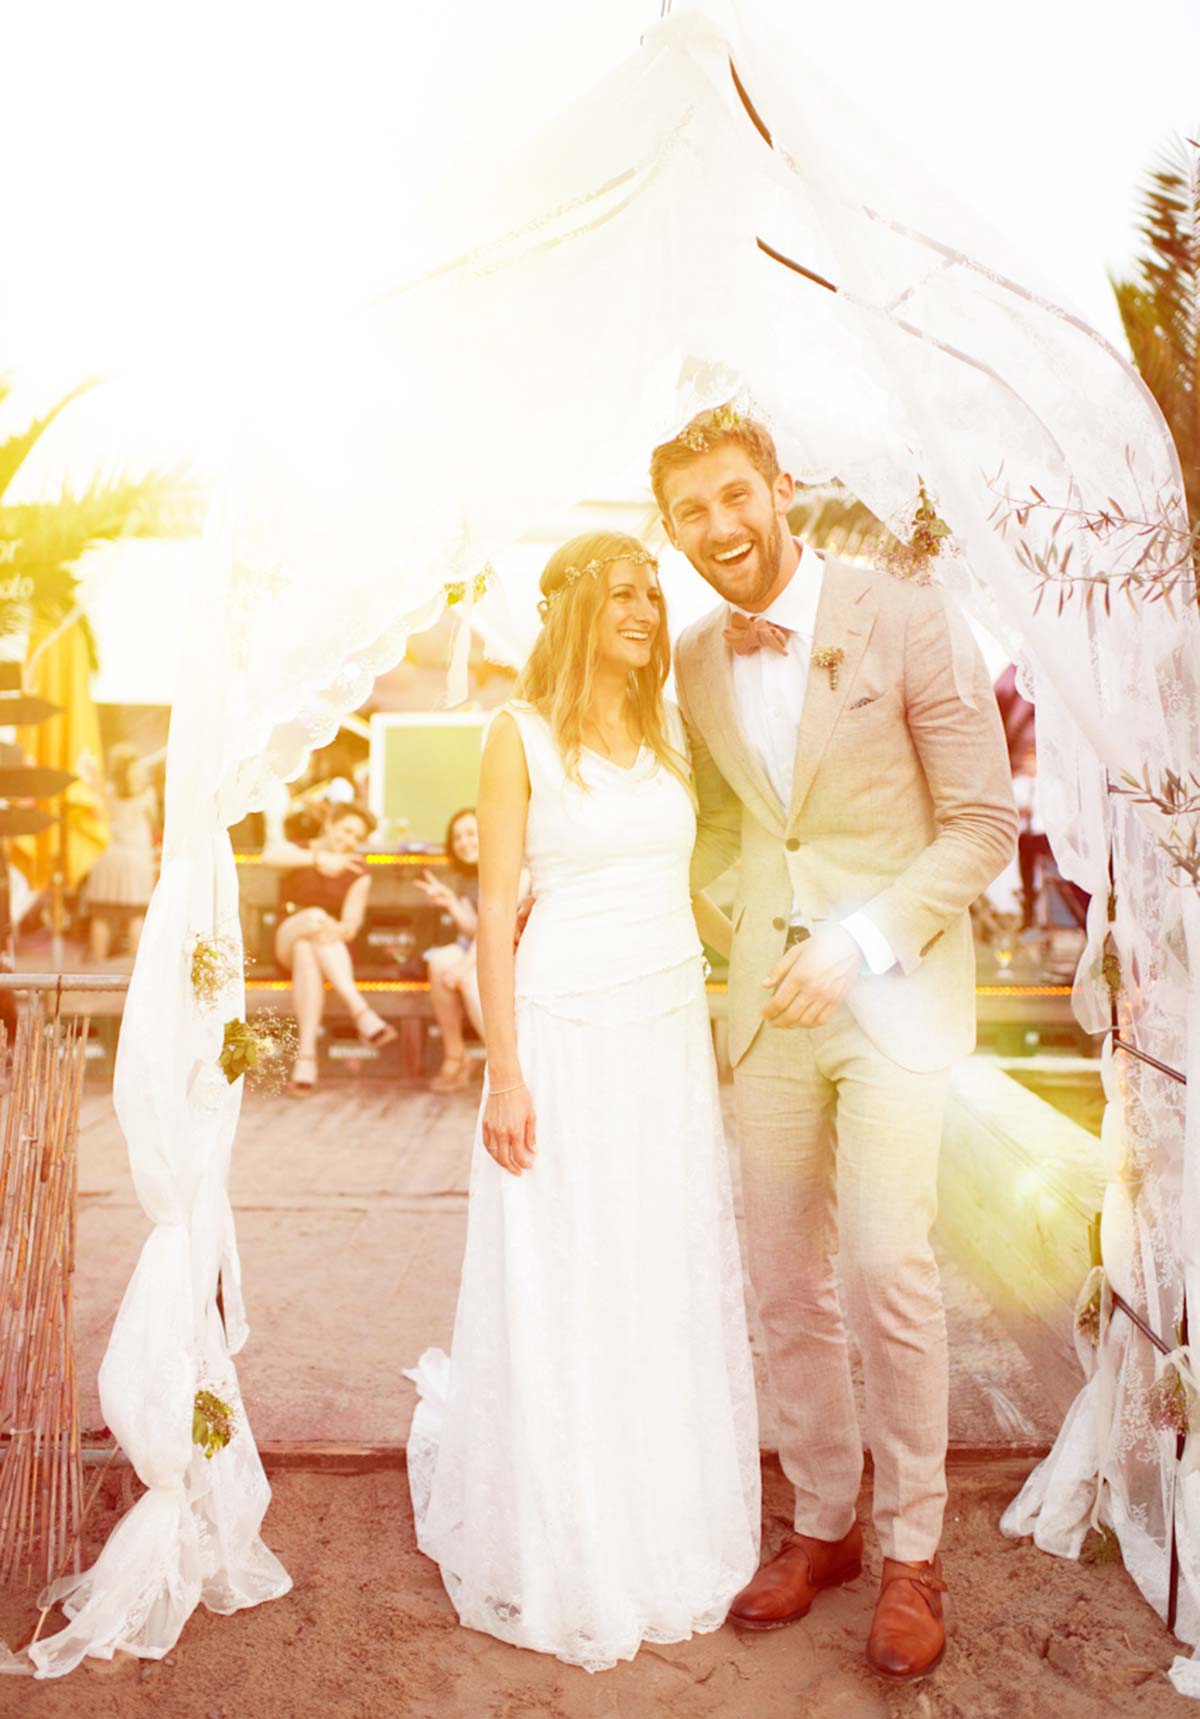 Honeylight Hochzeitsfotografen: Brautpaar lacht glücklich in die Kamera